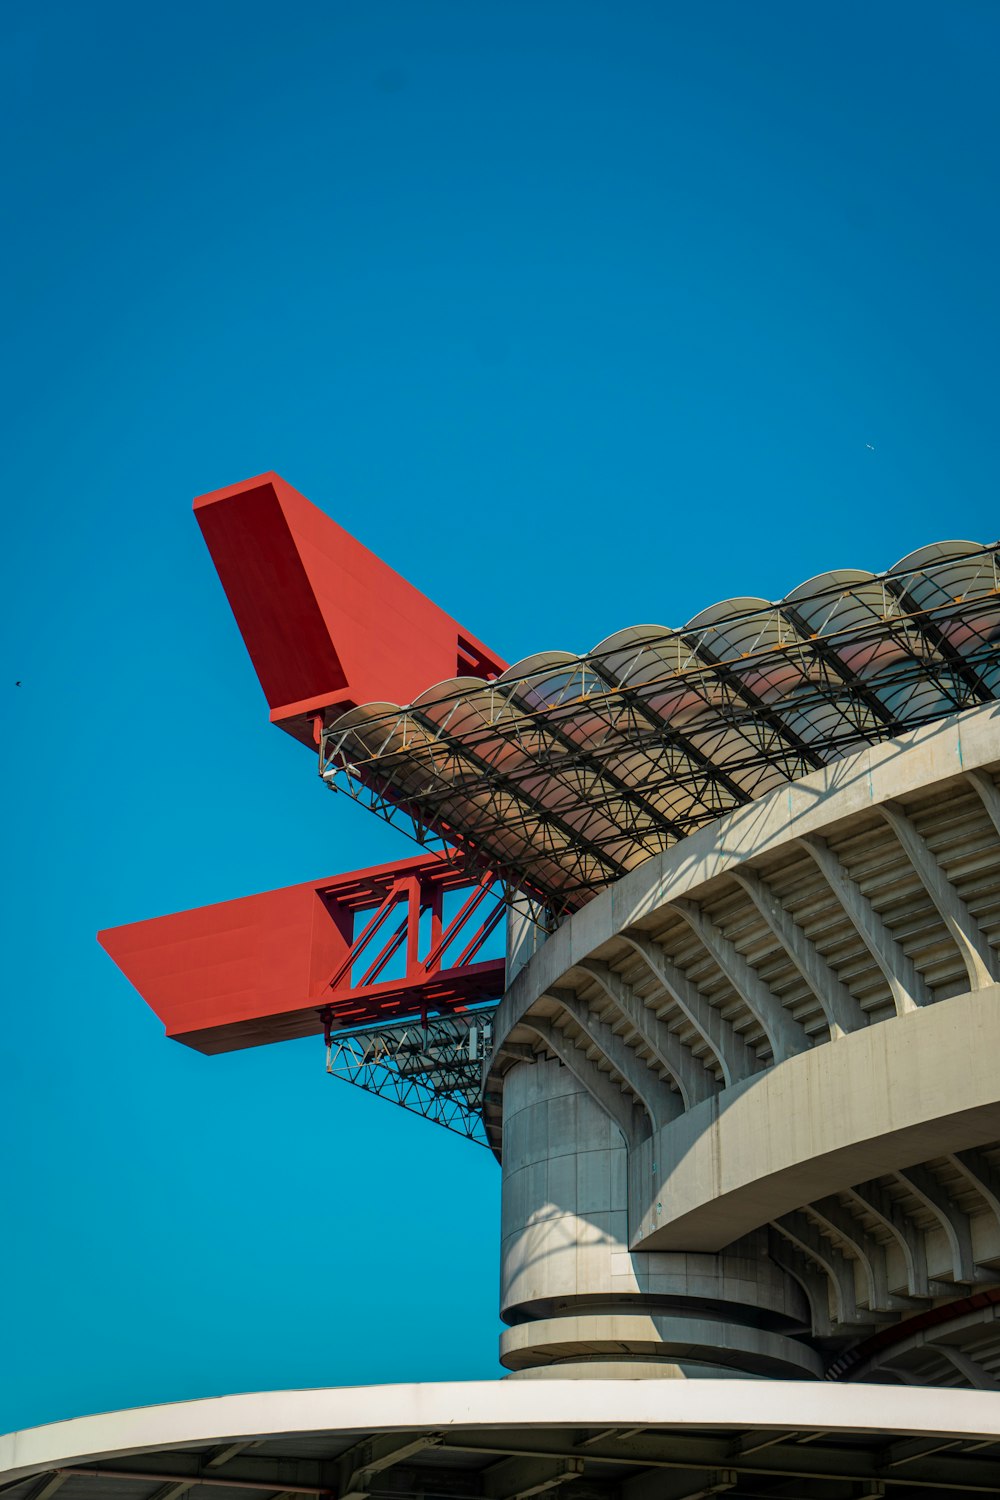 Um avião vermelho está sobrevoando um estádio